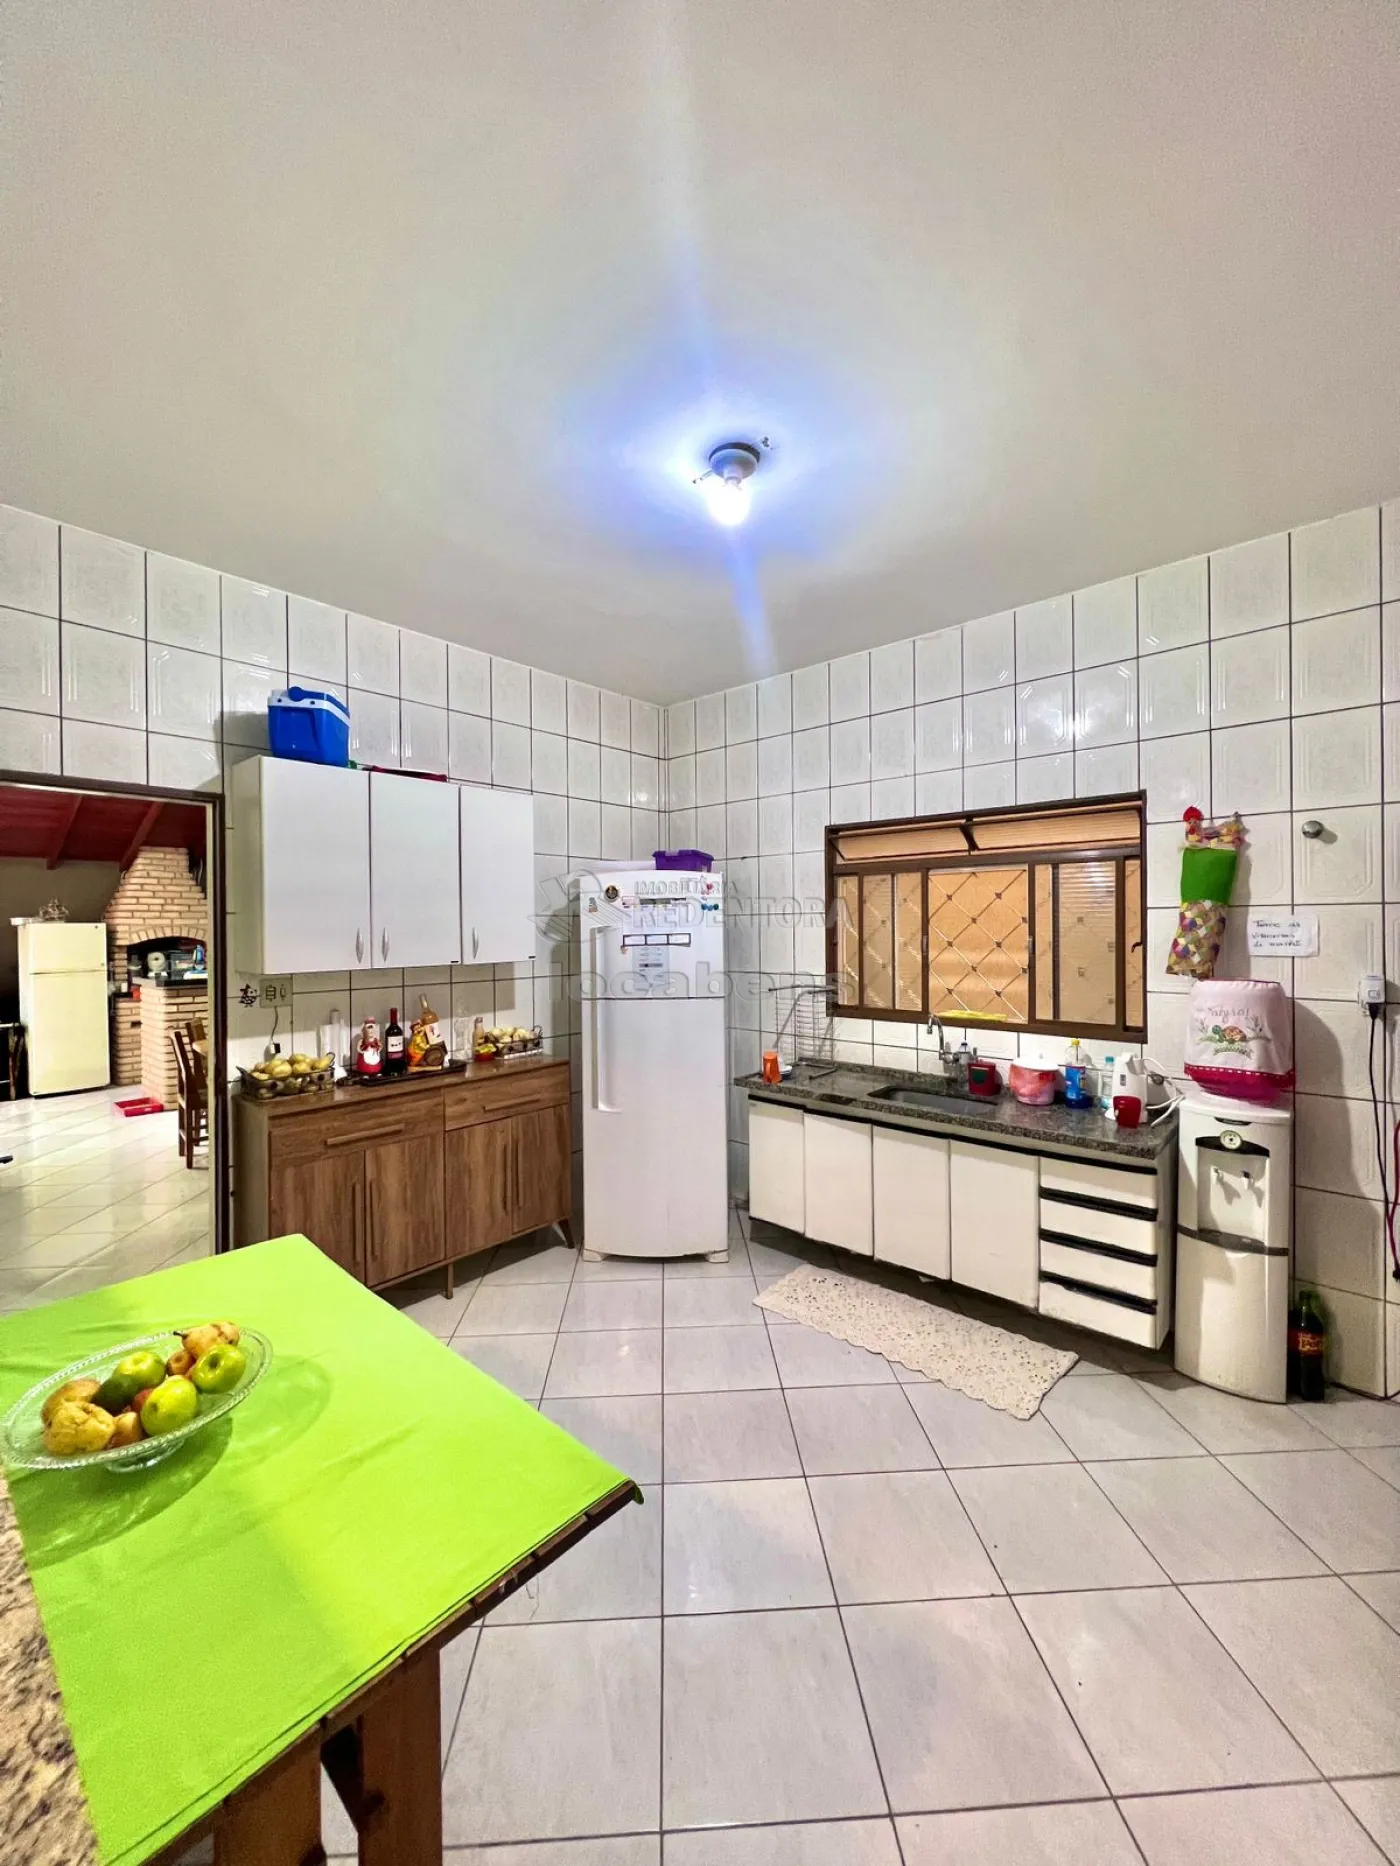 Comprar Casa / Padrão em São José do Rio Preto apenas R$ 650.000,00 - Foto 18